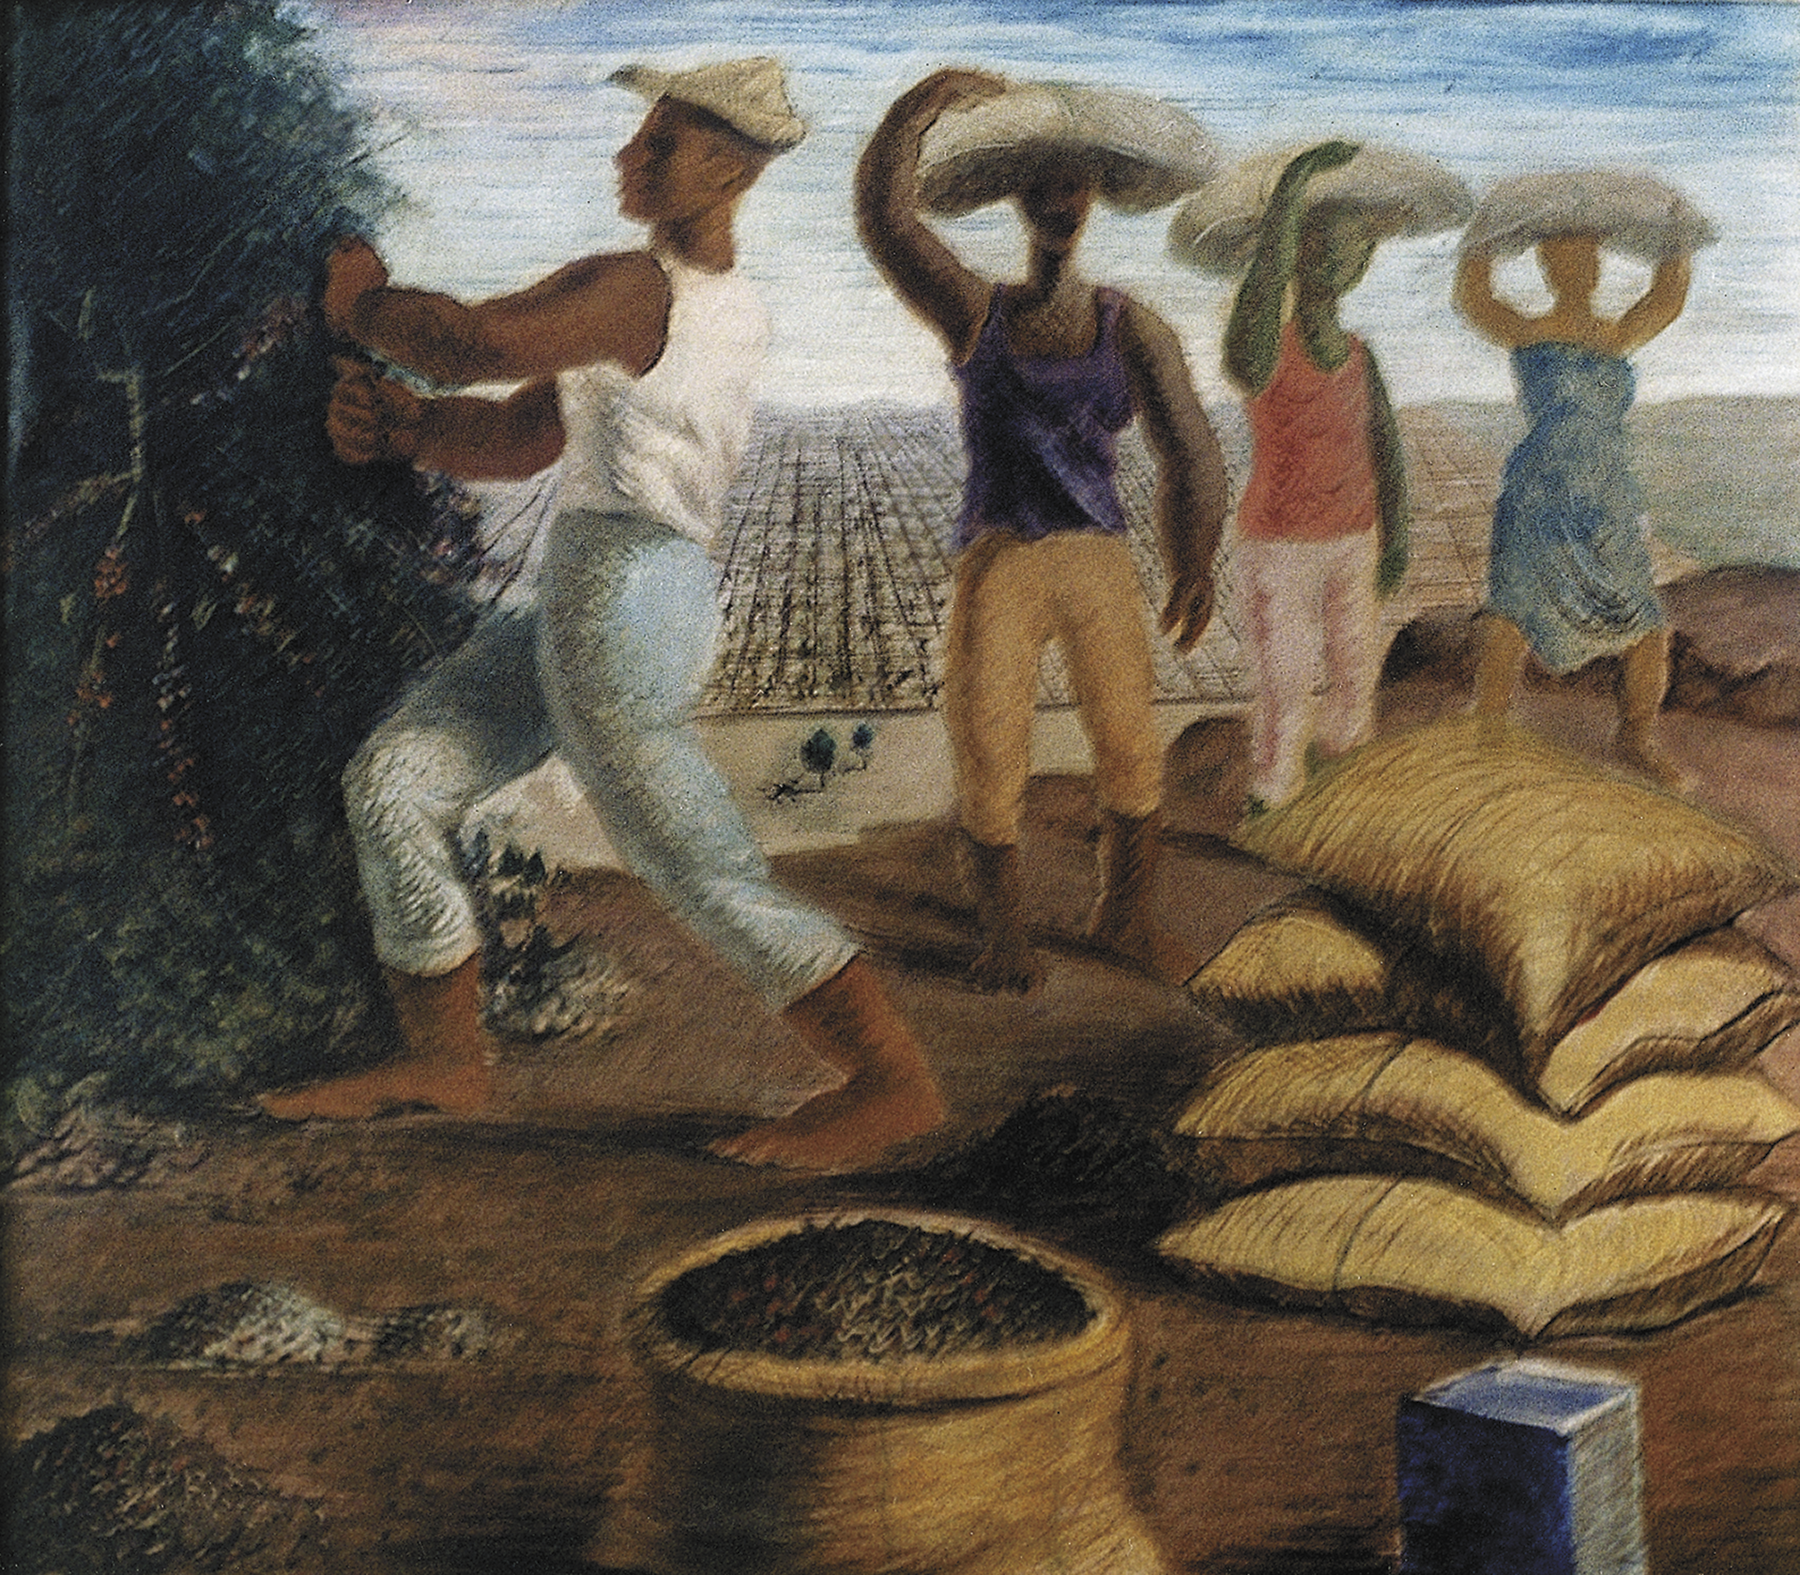 Pintura. À esquerda, um homem de calça, regata e chapéu, colhendo café. À direita, três homens carregando sacos em suas cabeças. Em frente a eles há mais sacos empilhados. Um deles está aberto com os grãos expostos.